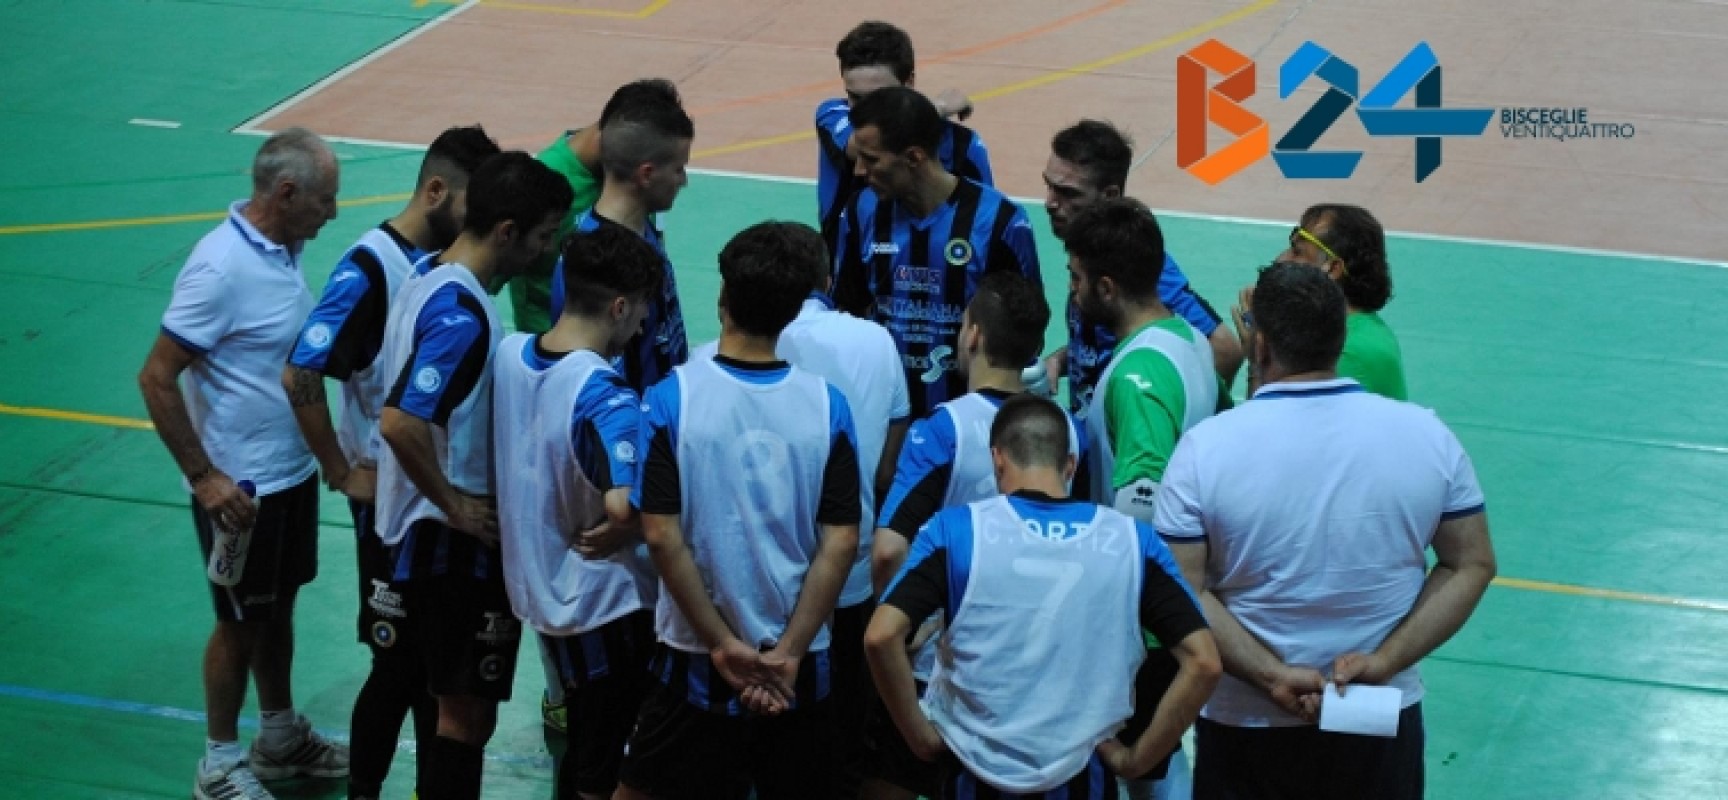 FINALE: Futsal Bisceglie – Borussia Policoro 4-3